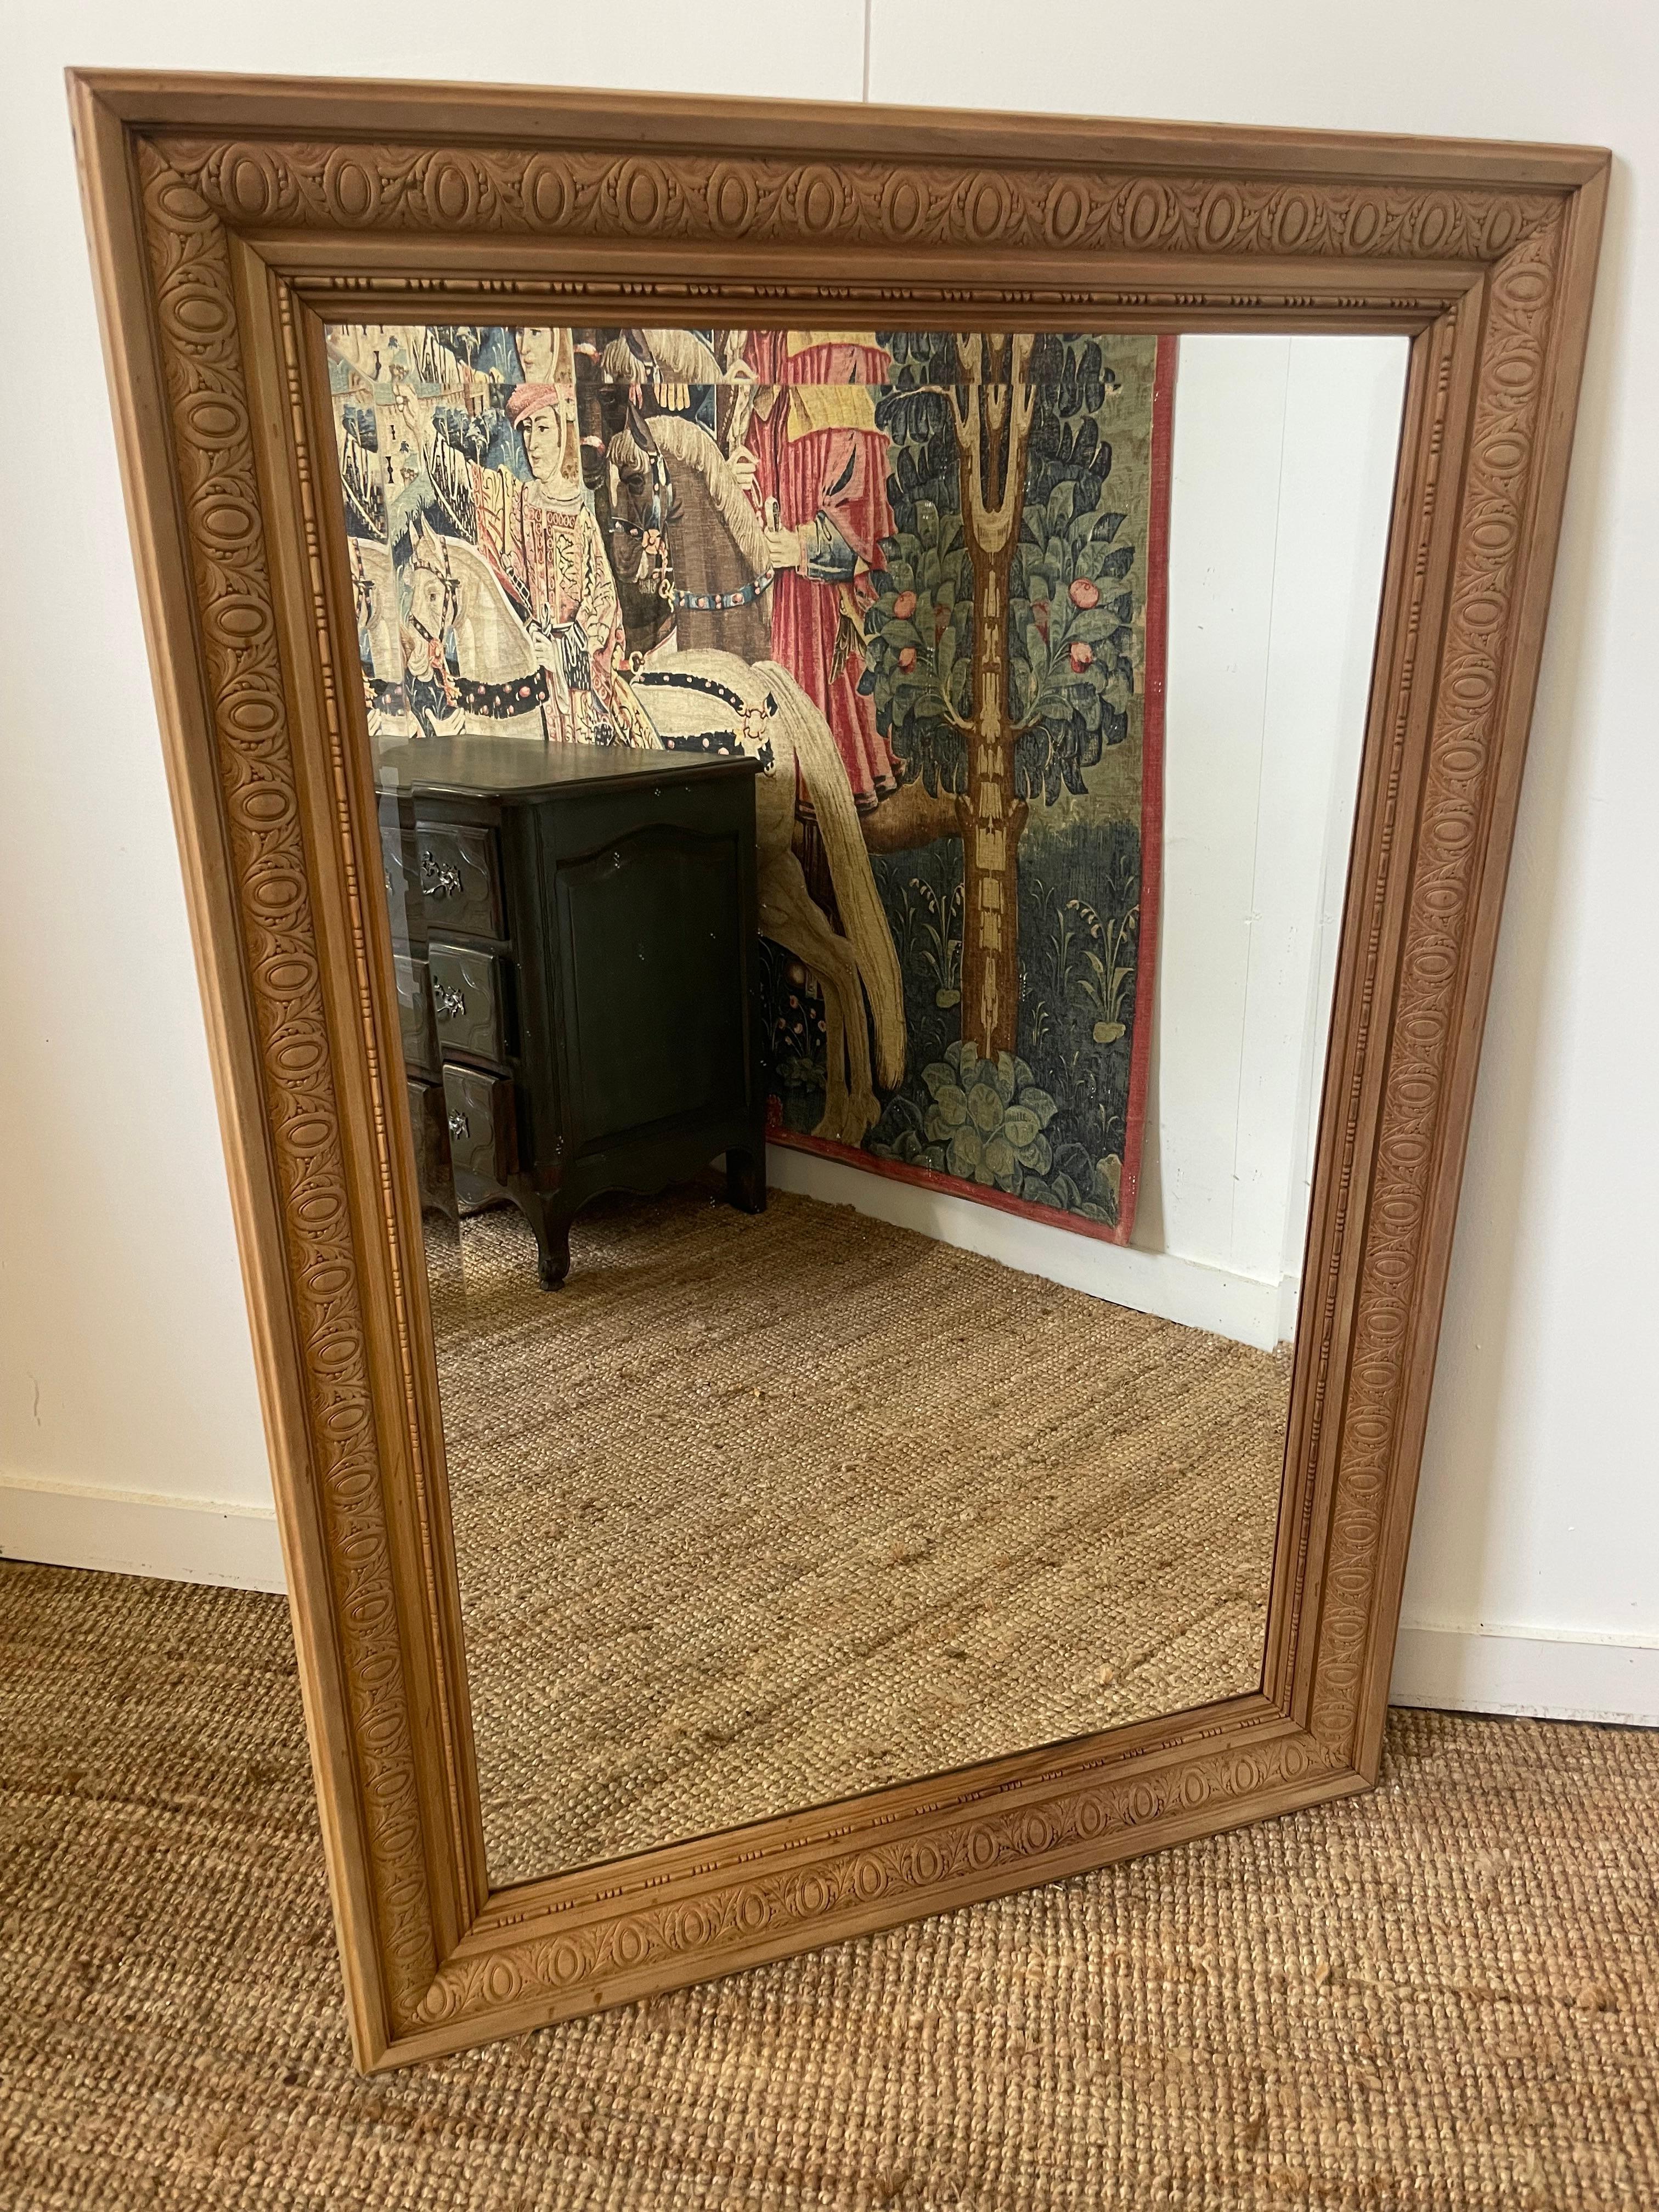 Bon miroir en noyer frotté du début du 20e siècle
Français vers 1920 avec miroir biseauté et panneaux arrière d'origine.
137cms x 94cms peut être accroché à l'horizontale ou à la verticale